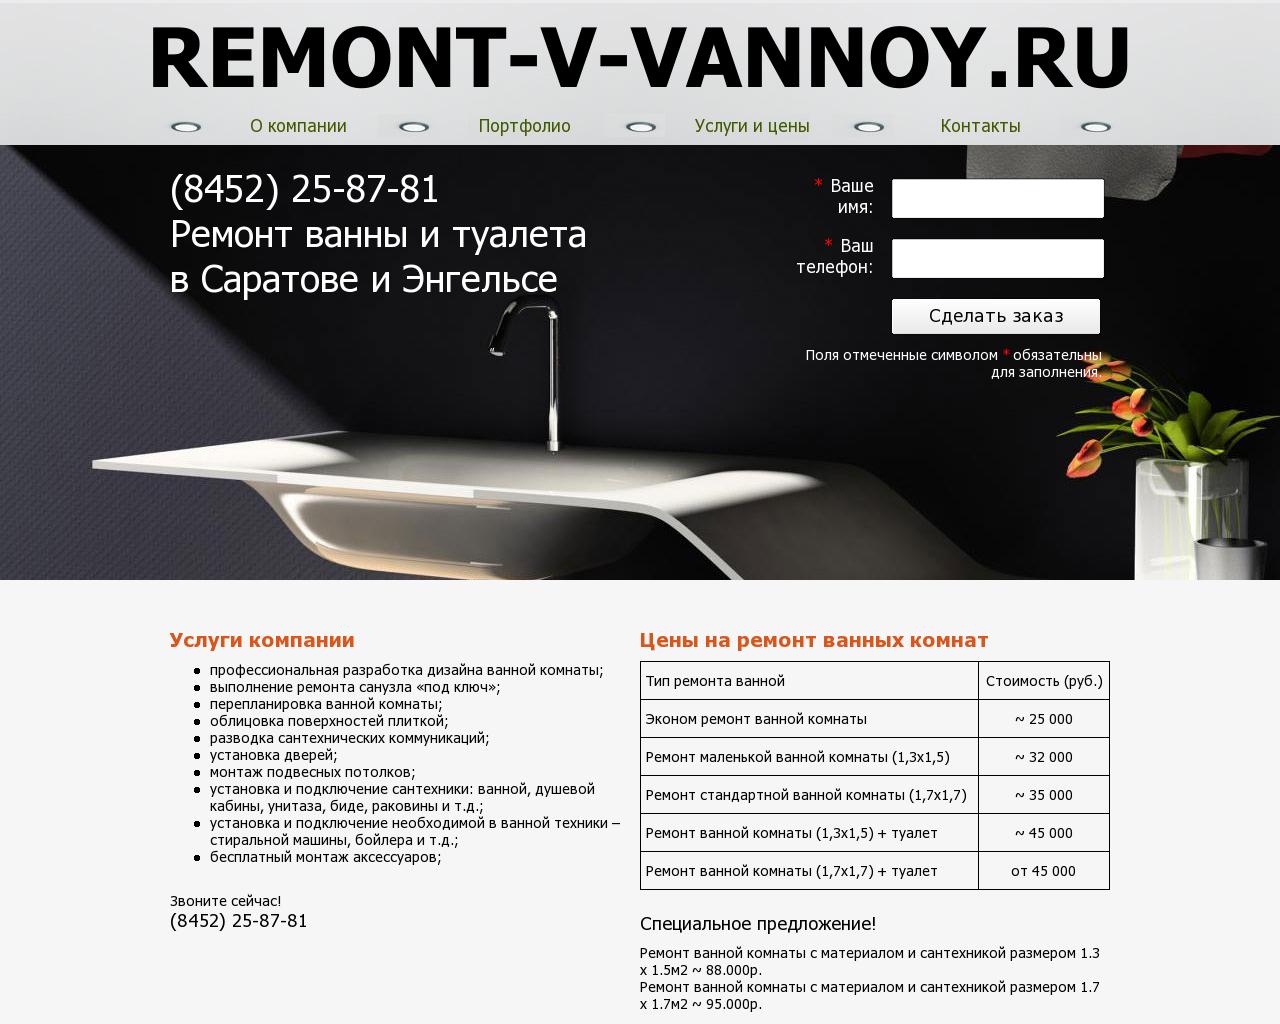 Изображение сайта remont-v-vannoy.ru в разрешении 1280x1024